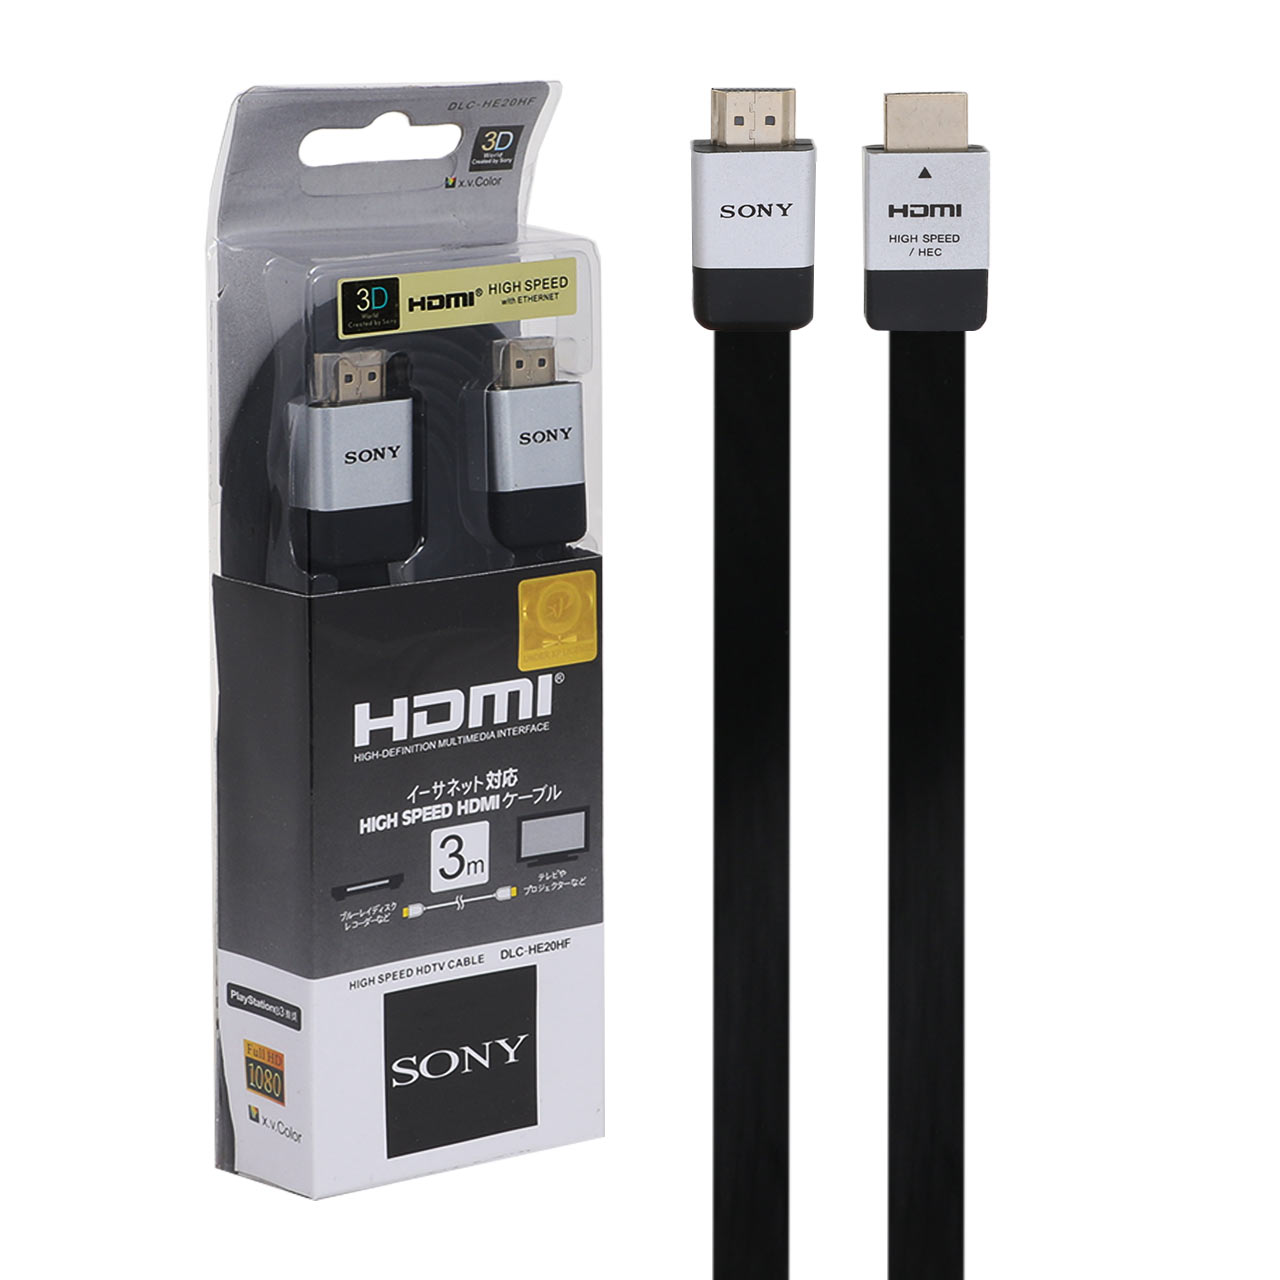 کابل HDMI سونی به طول 3 متر – مشکی